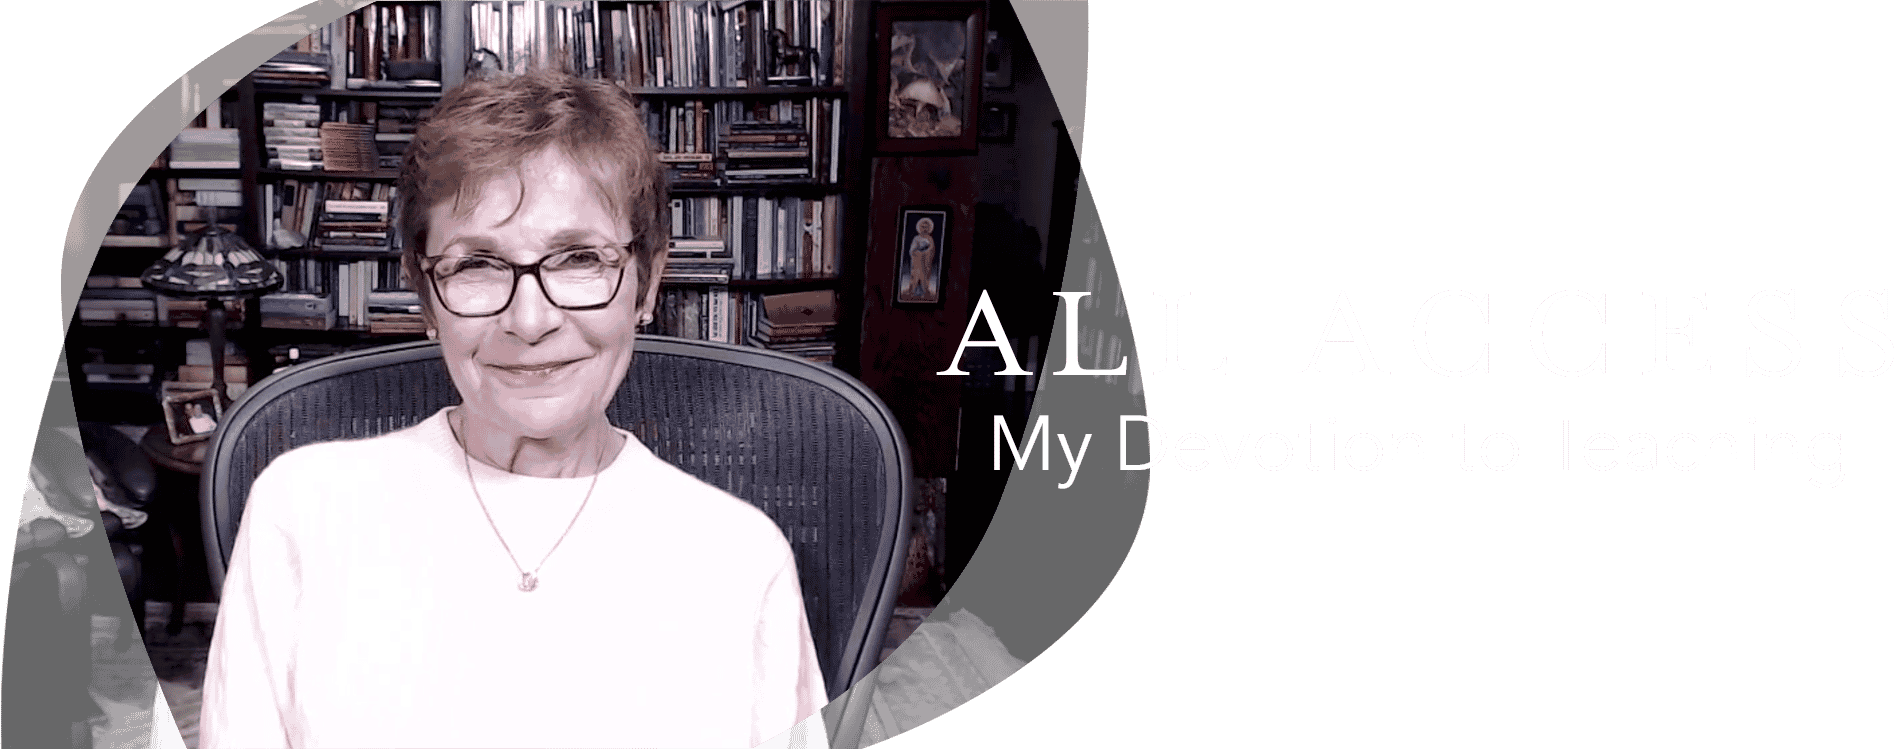 Caroline Myss - My Devotion to Teaching